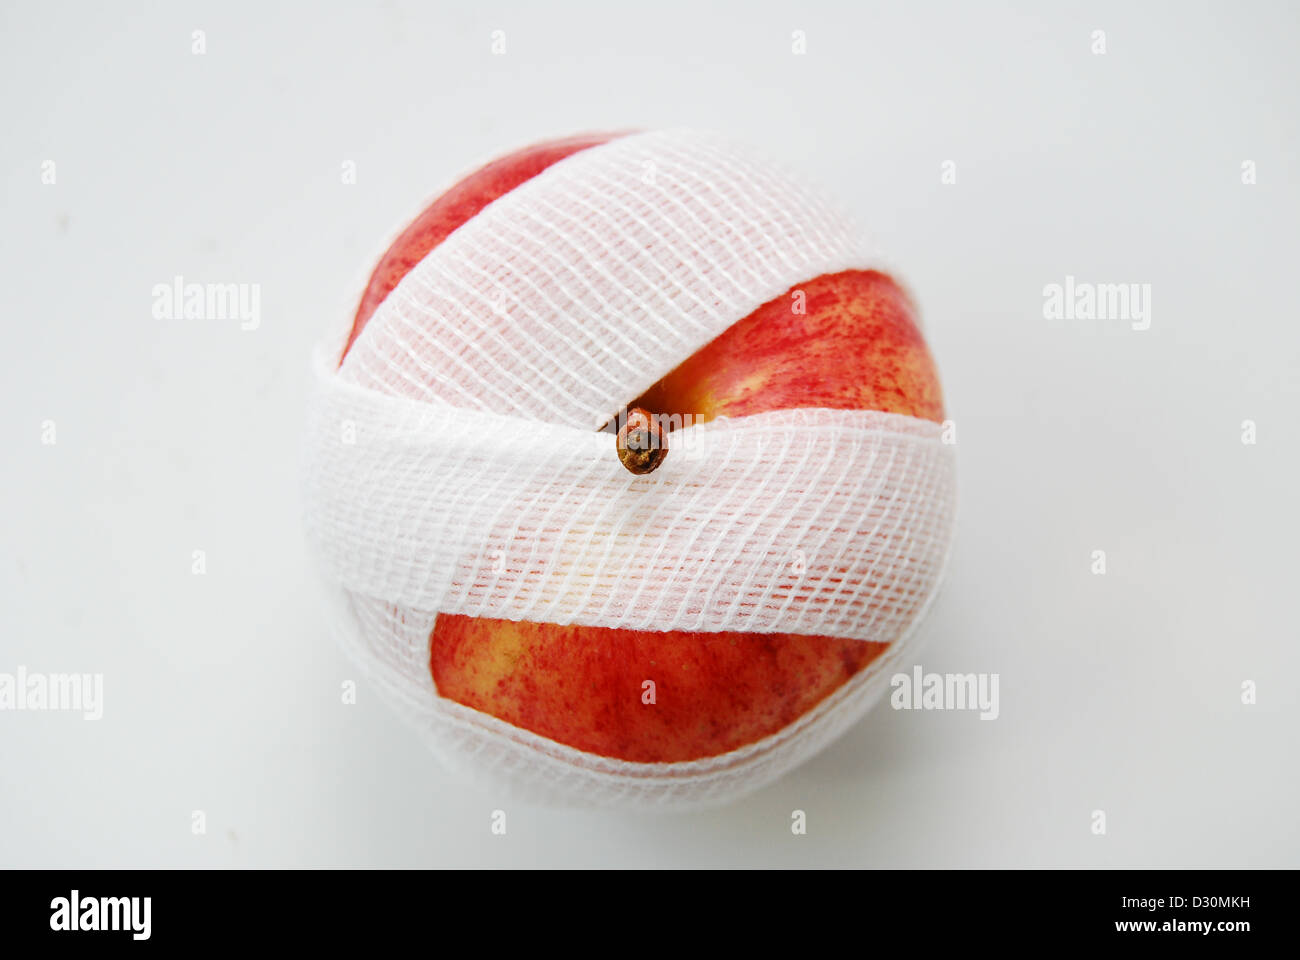 Un rosso e giallo Apple su uno sfondo bianco, avvolto in una garza bianca benda con un sopra o birds eye view del frutto. Foto Stock